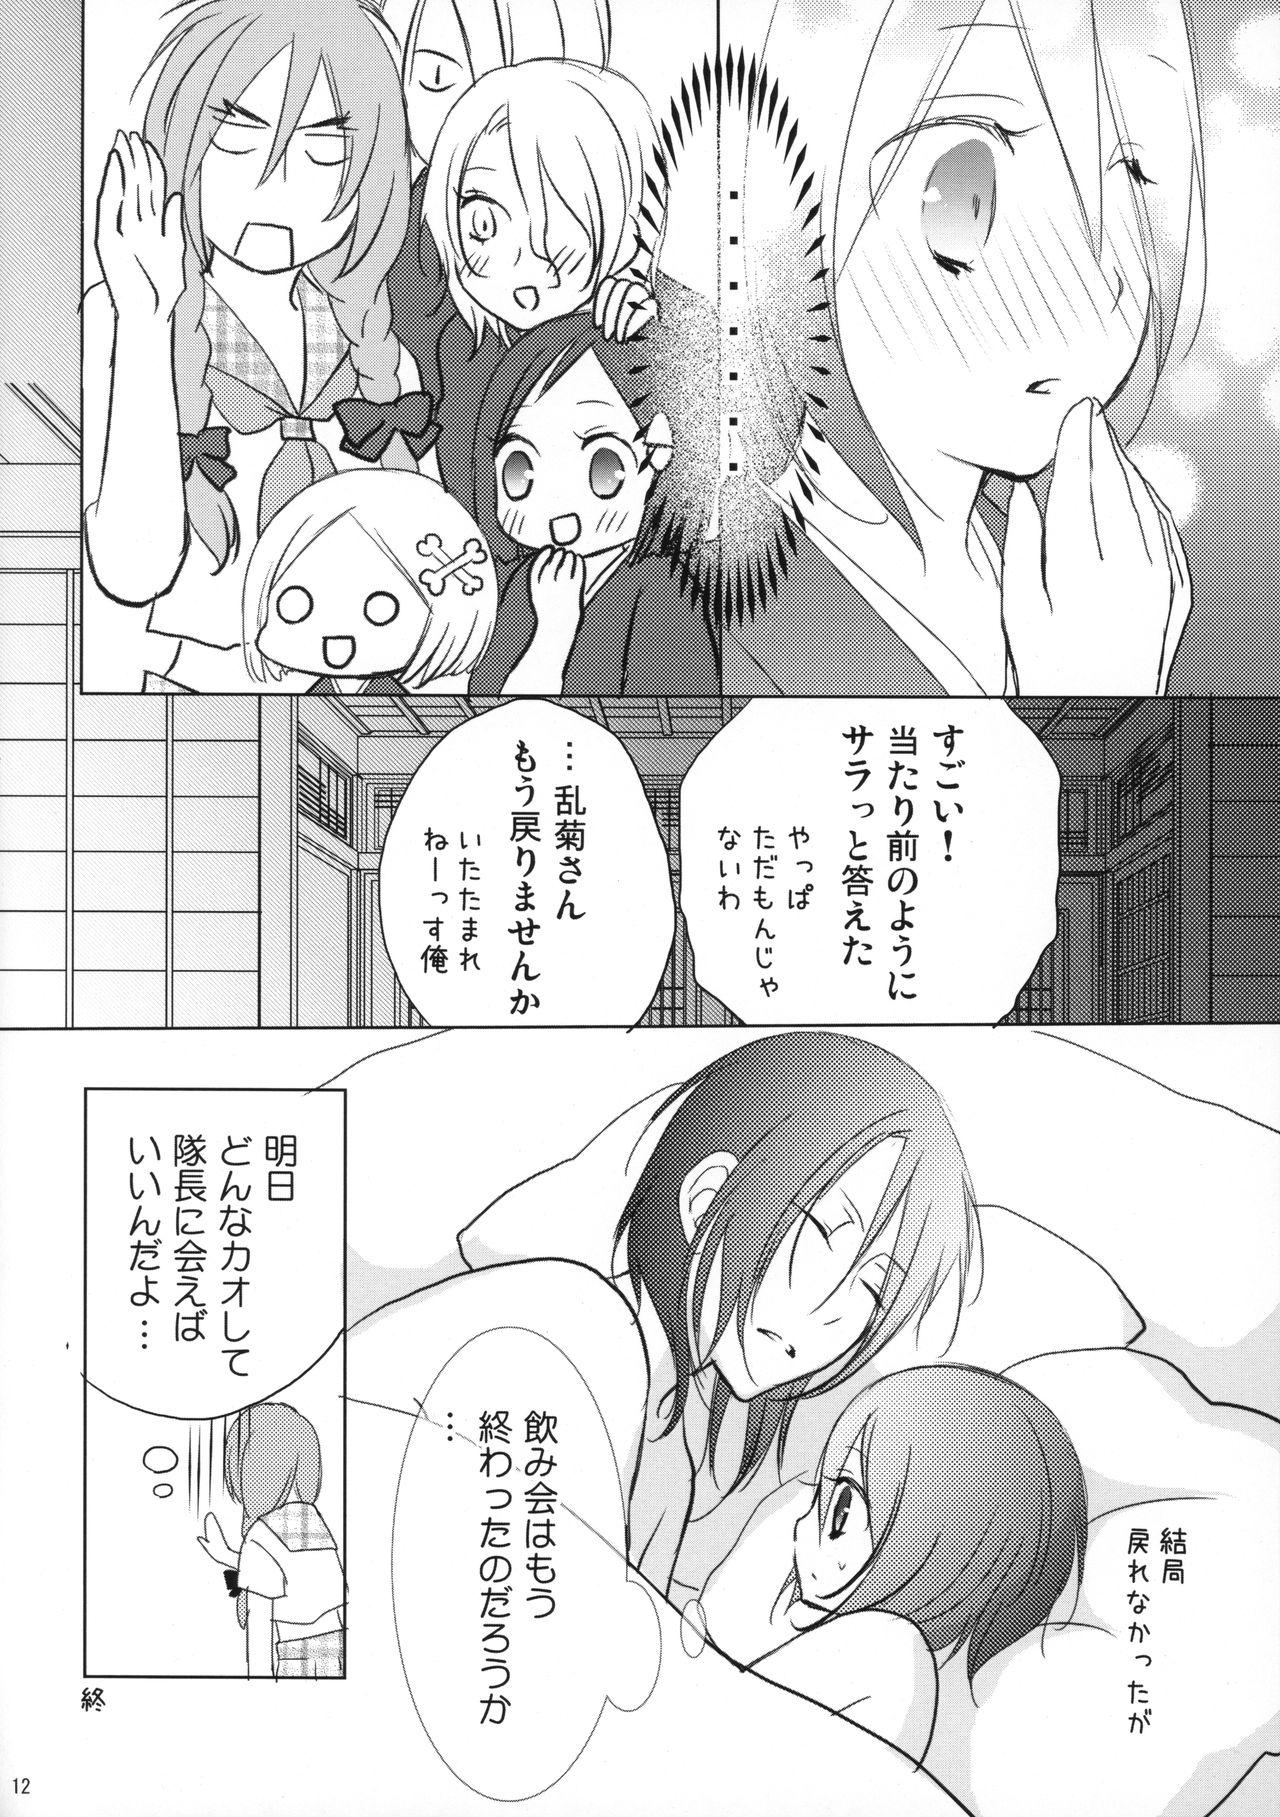 Orgy (C82) [DewDrop (Sakurai)] Tsukishima-san in Kuchiki-ke (Bleach) - Bleach Amateurs Gone Wild - Page 11